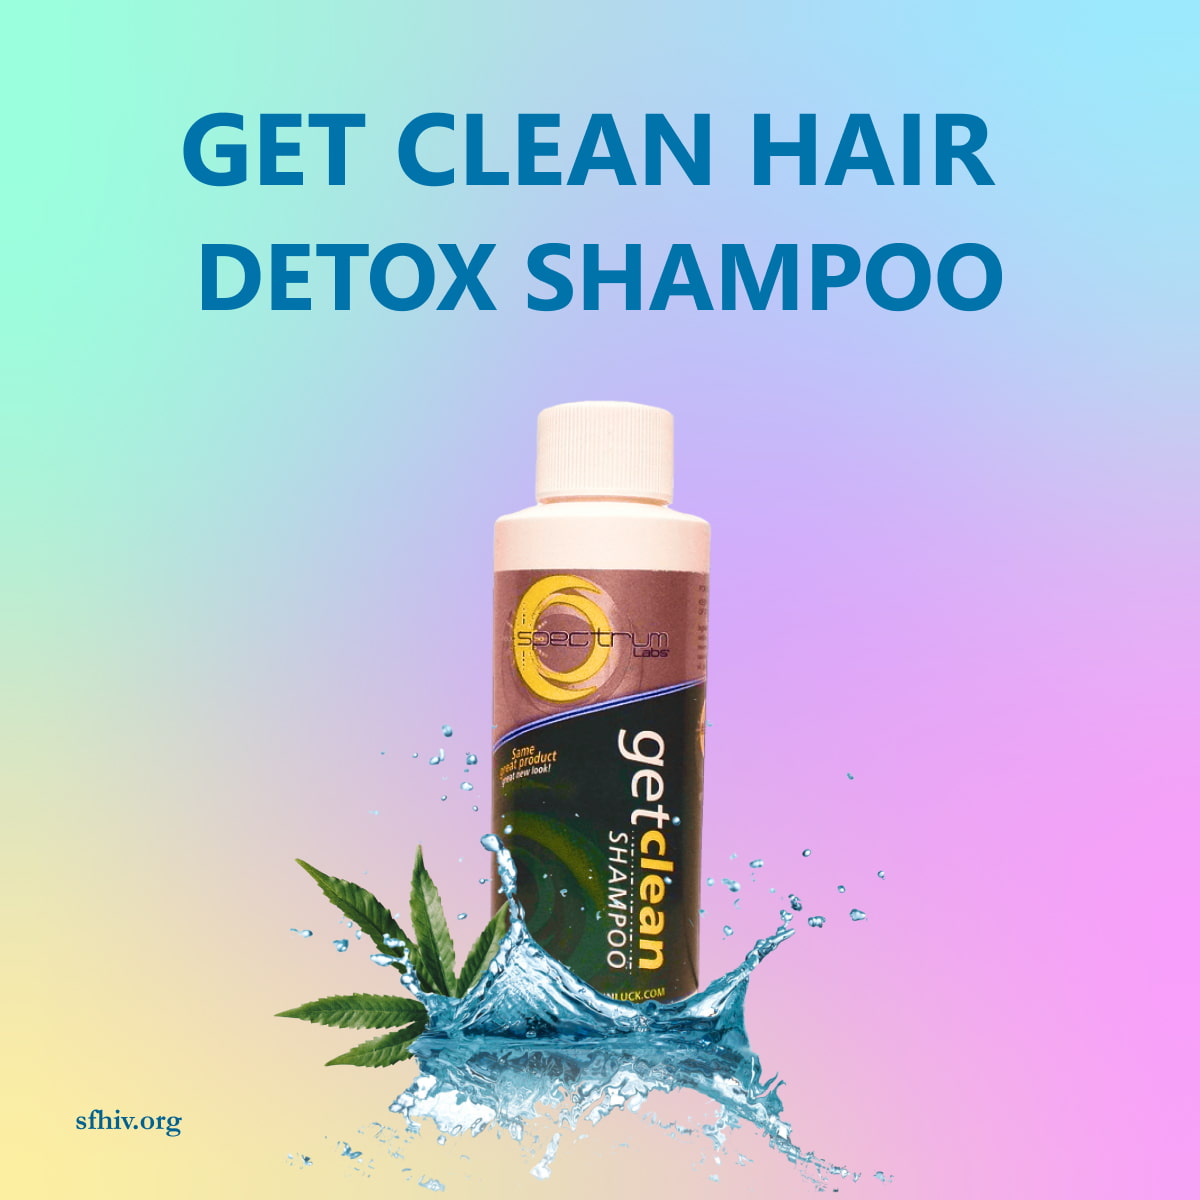 Get Clean Hair Detox Shampoo